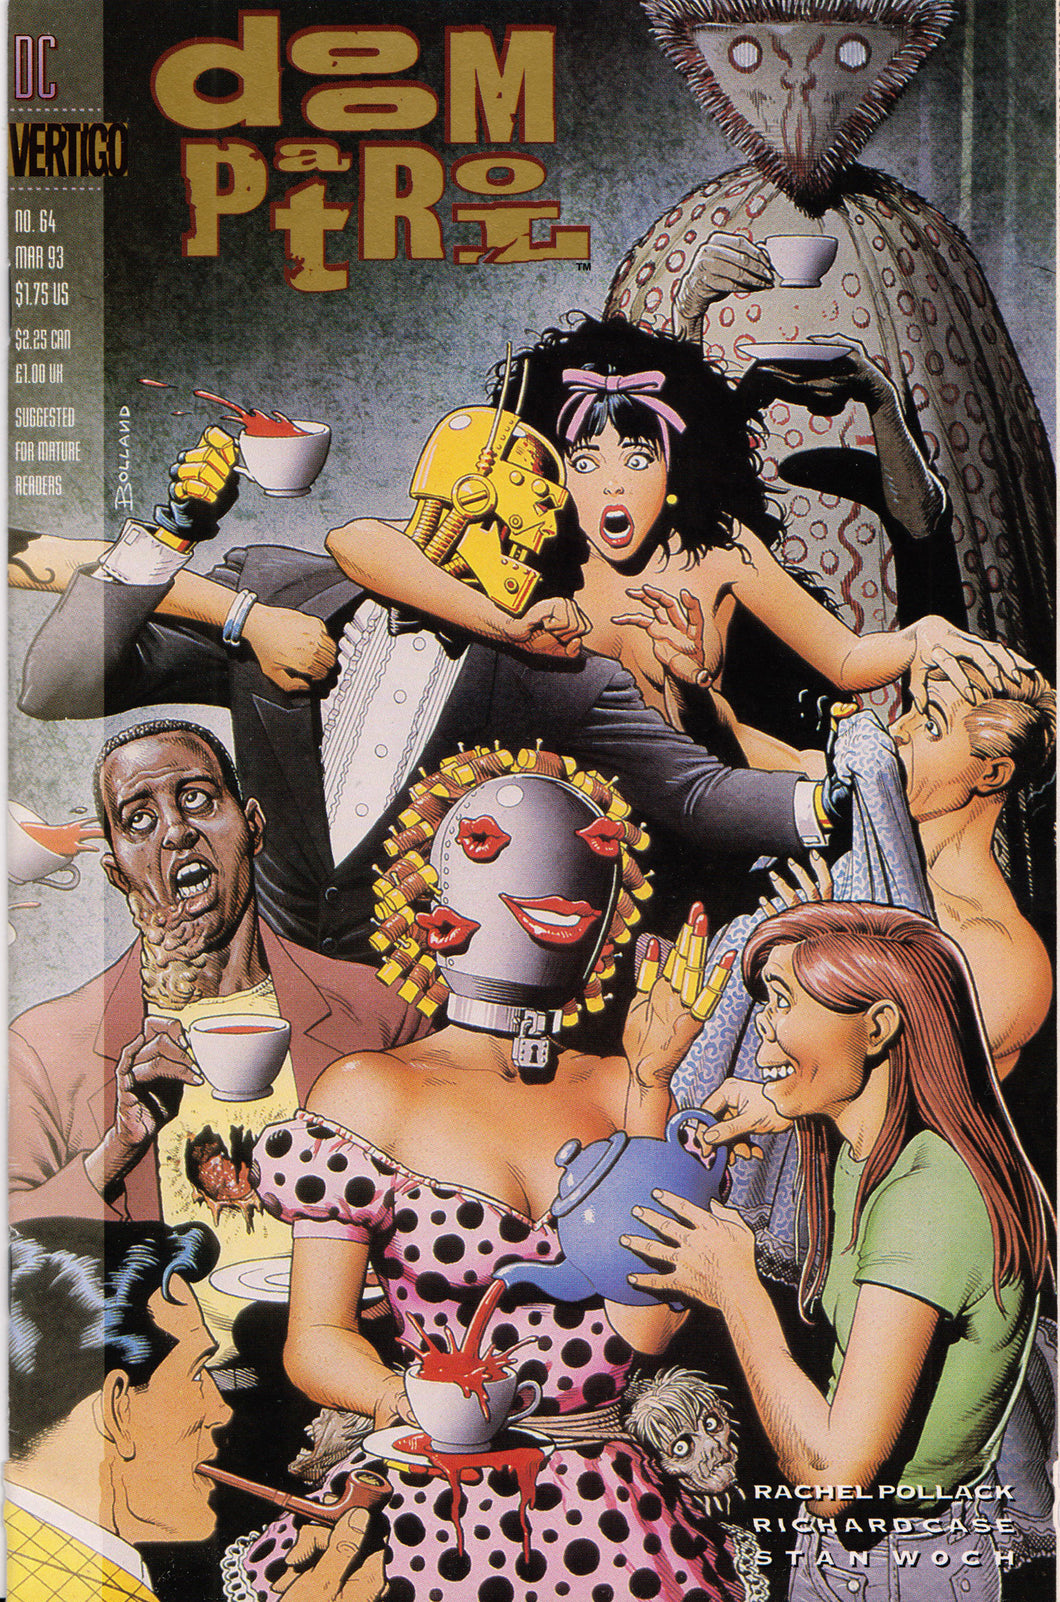 DOOM PATROL #64 COMIC BOOK ~ DC/Vertigo Comics